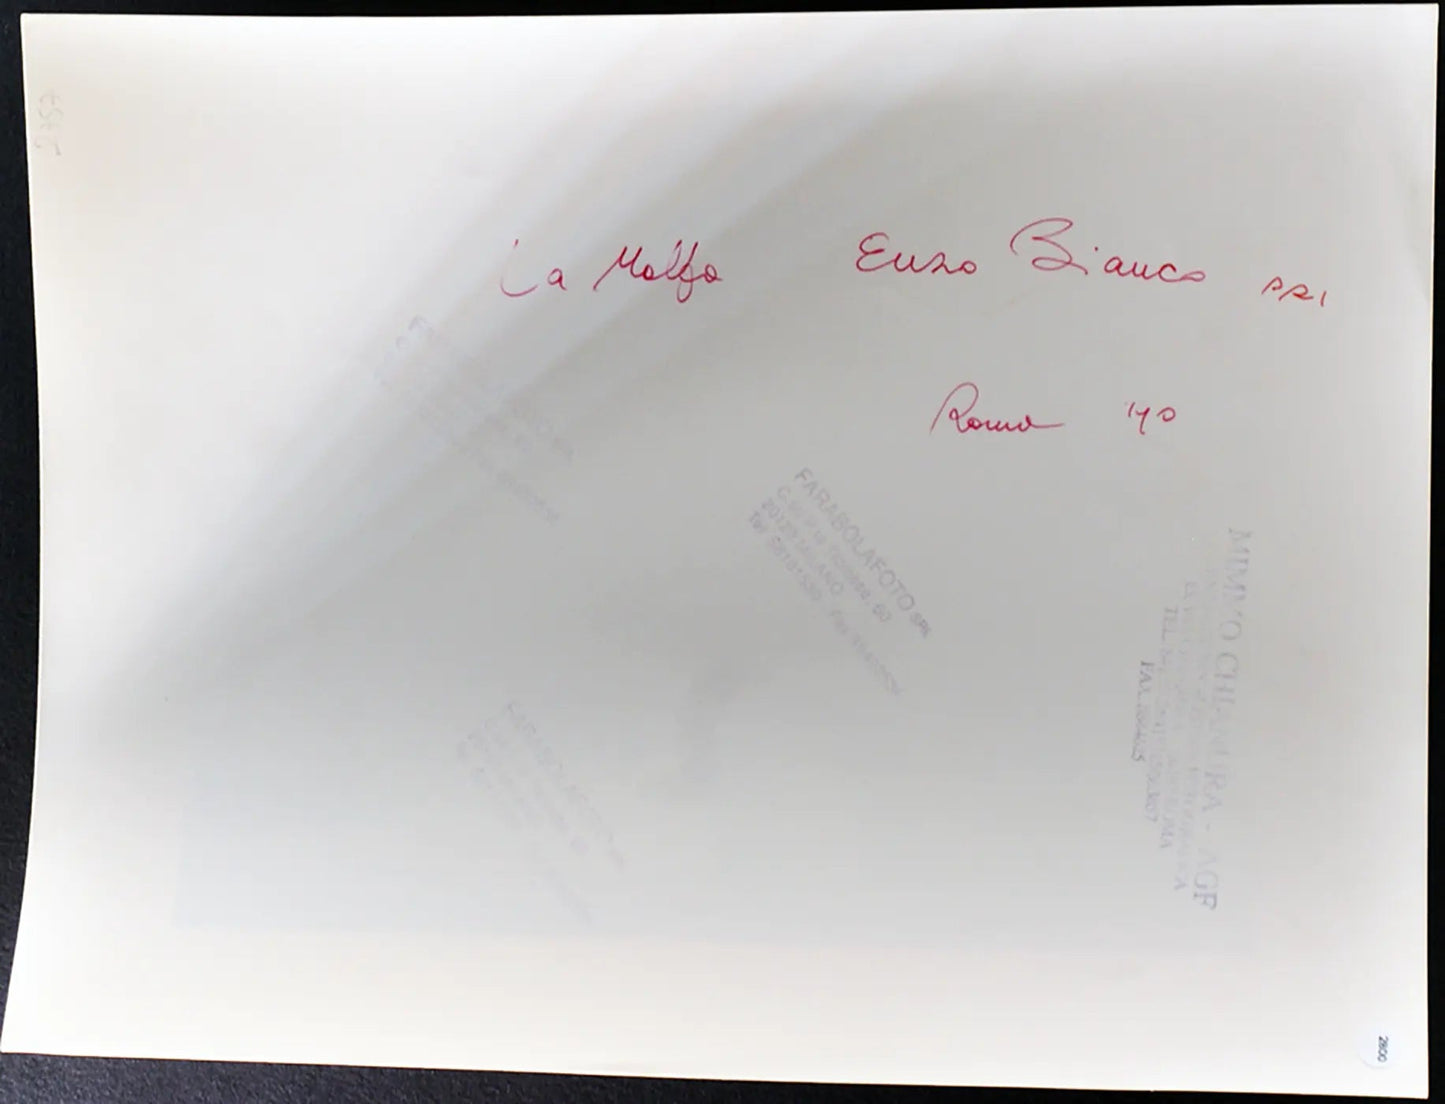 Bianco e La Malfa Congresso Pri 1990 Ft 2800 - Stampa 24x30 cm - Farabola Stampa ai sali d'argento